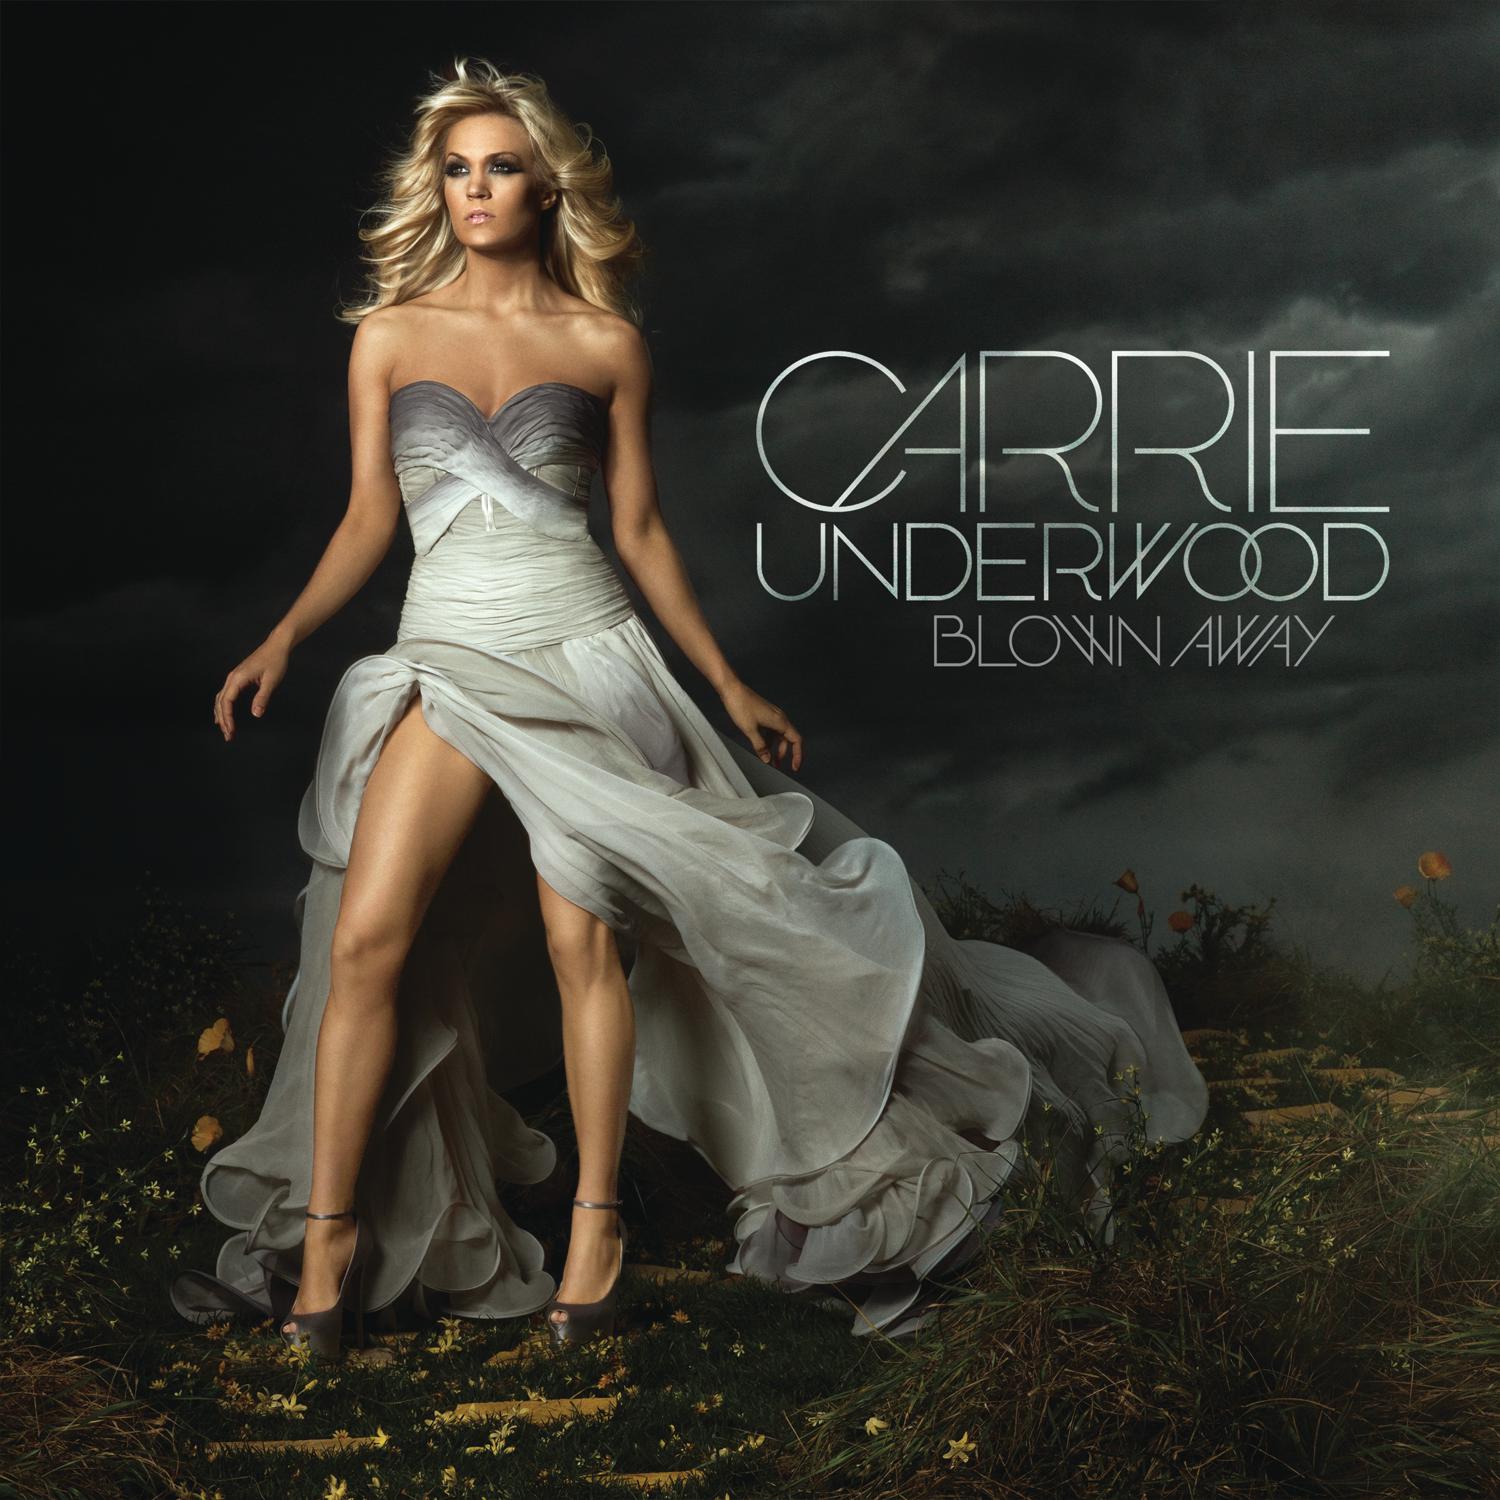 Carrie Underwood - Blown Away (2012) [AcousticSounds FLAC 24bit/44,1kHz]